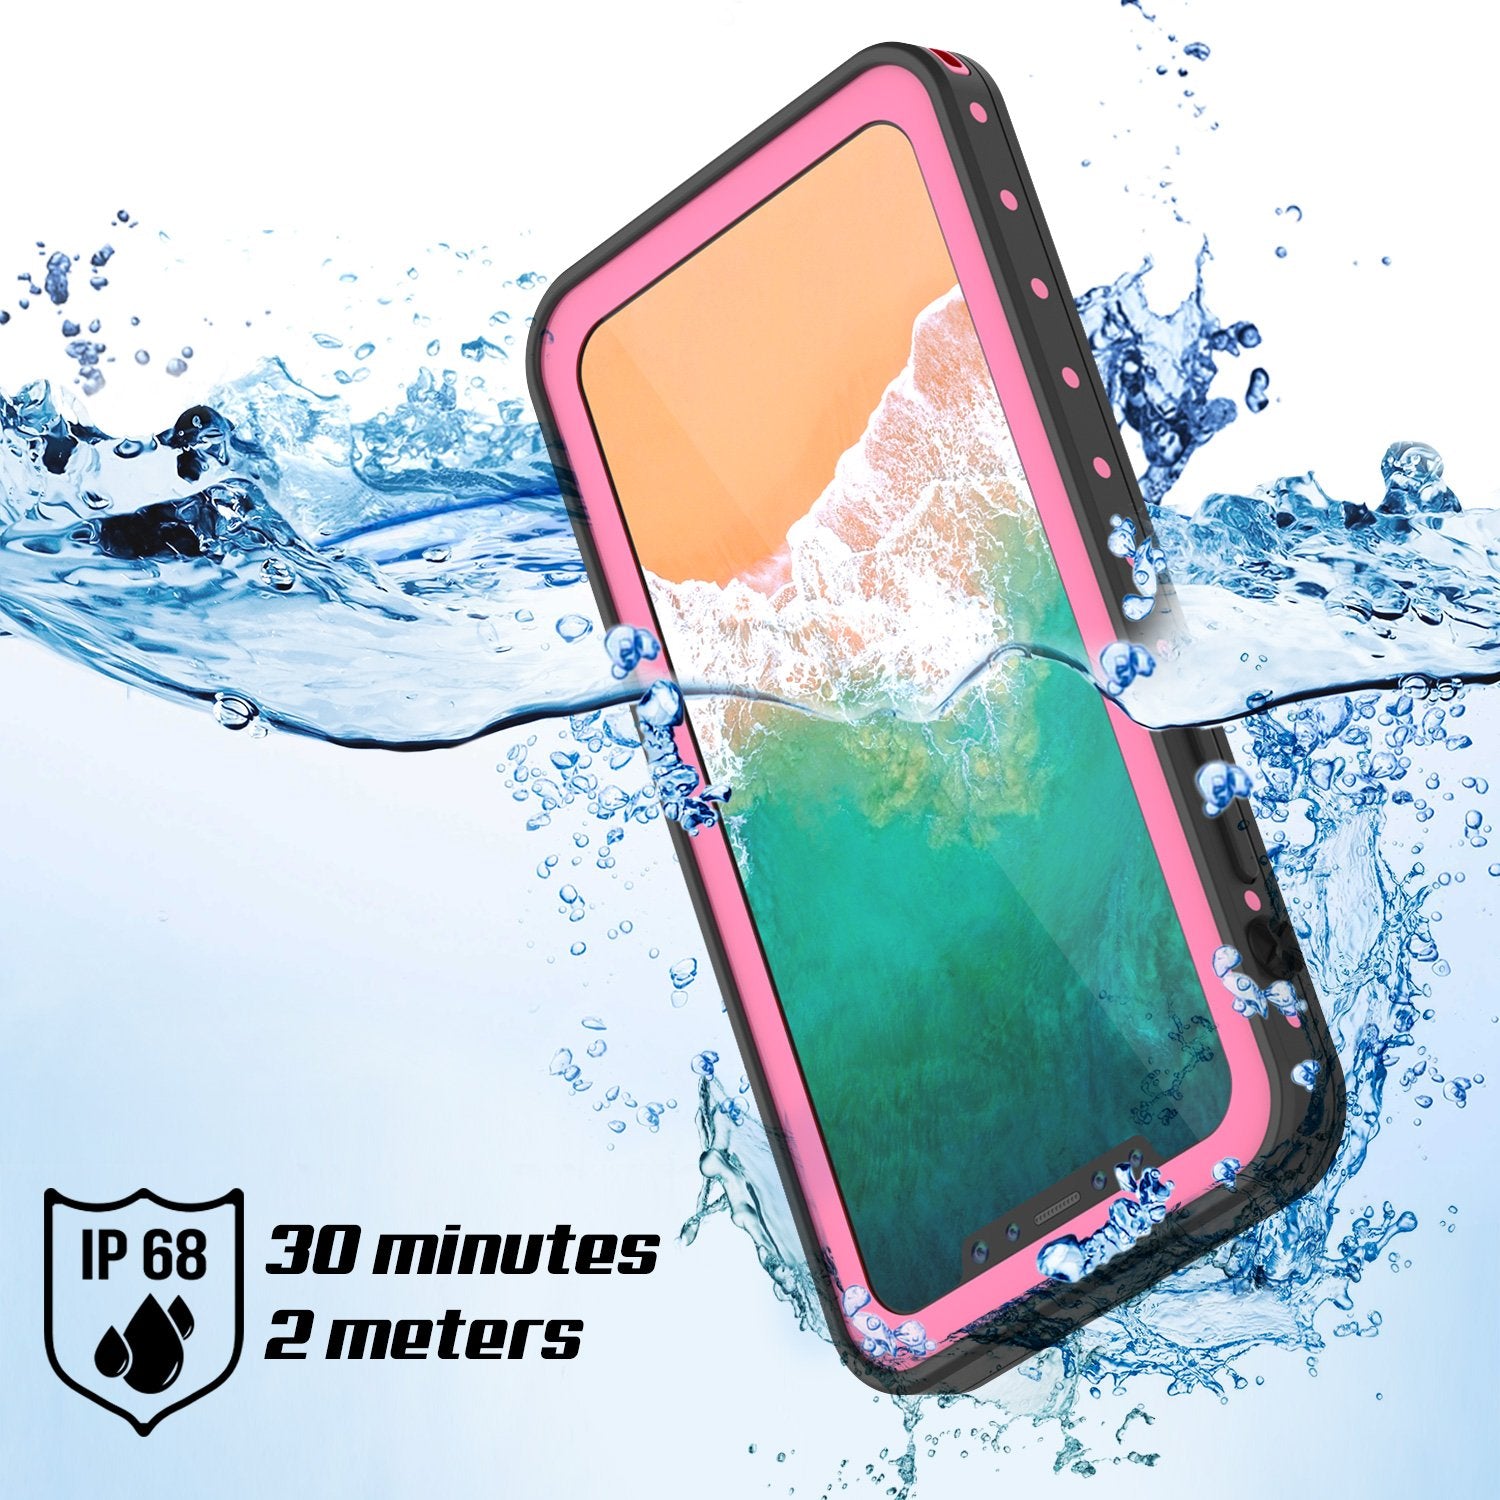 iPhone X Waterproof IP68 Case, Punkcase [Pink] [StudStar Series] [Slim Fit] [Dirtproof]